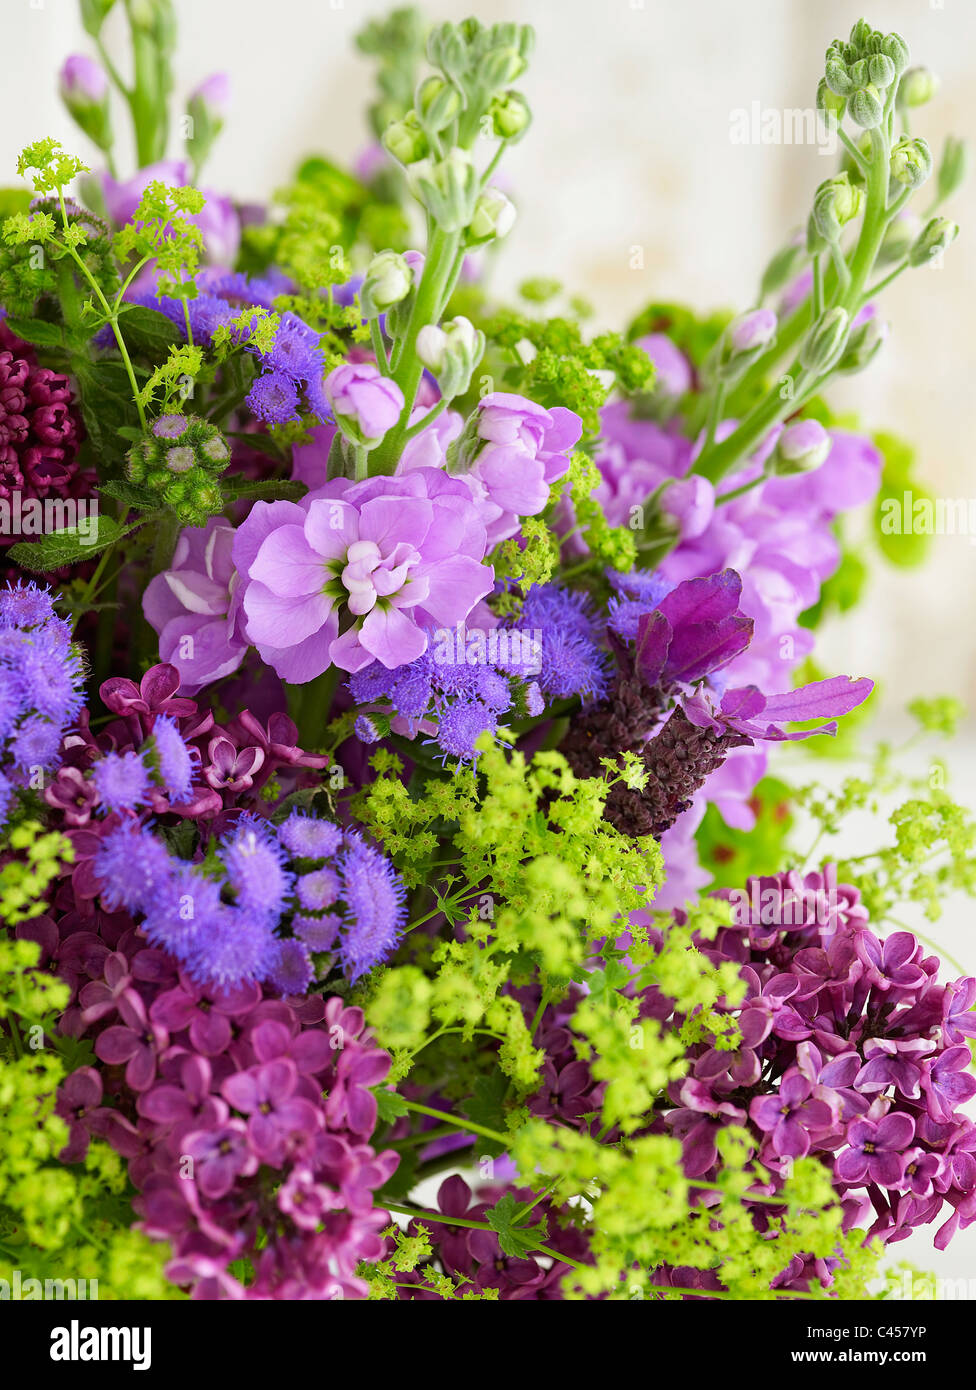 Blumenstrauß einschließlich Aktien, Alchemilla, Lavendel, Euphorbien, Ageratum, Flieder, Nahaufnahme Stockfoto